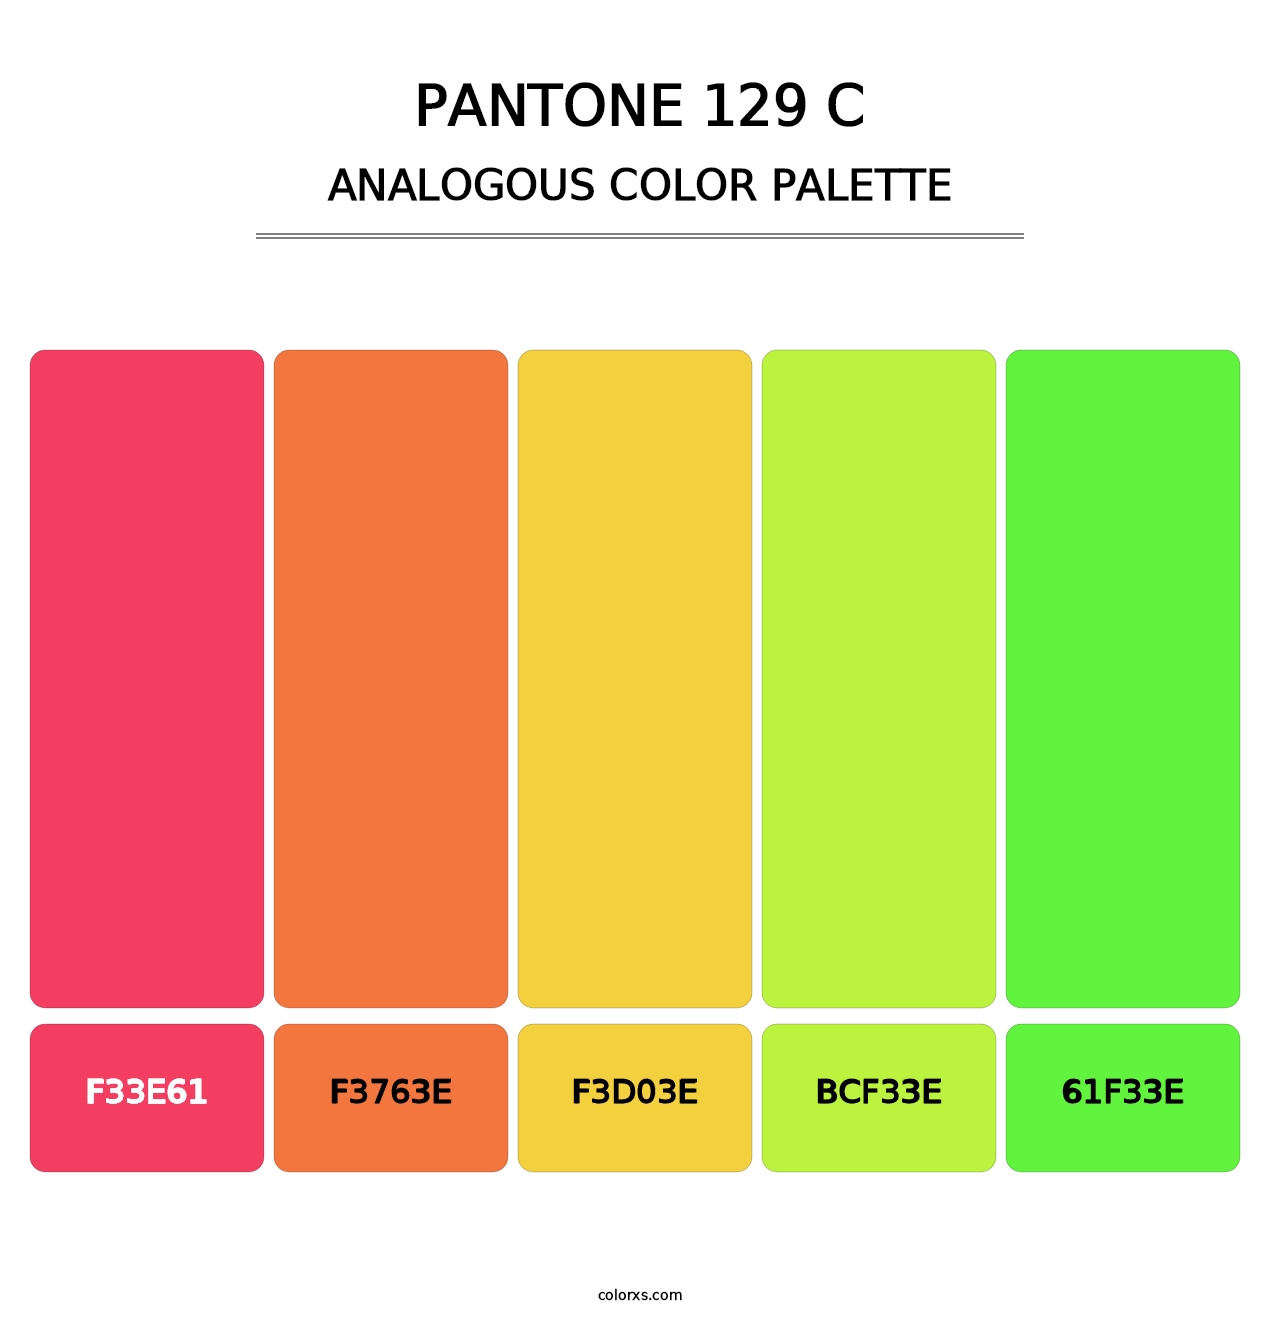 PANTONE 129 C - Analogous Color Palette